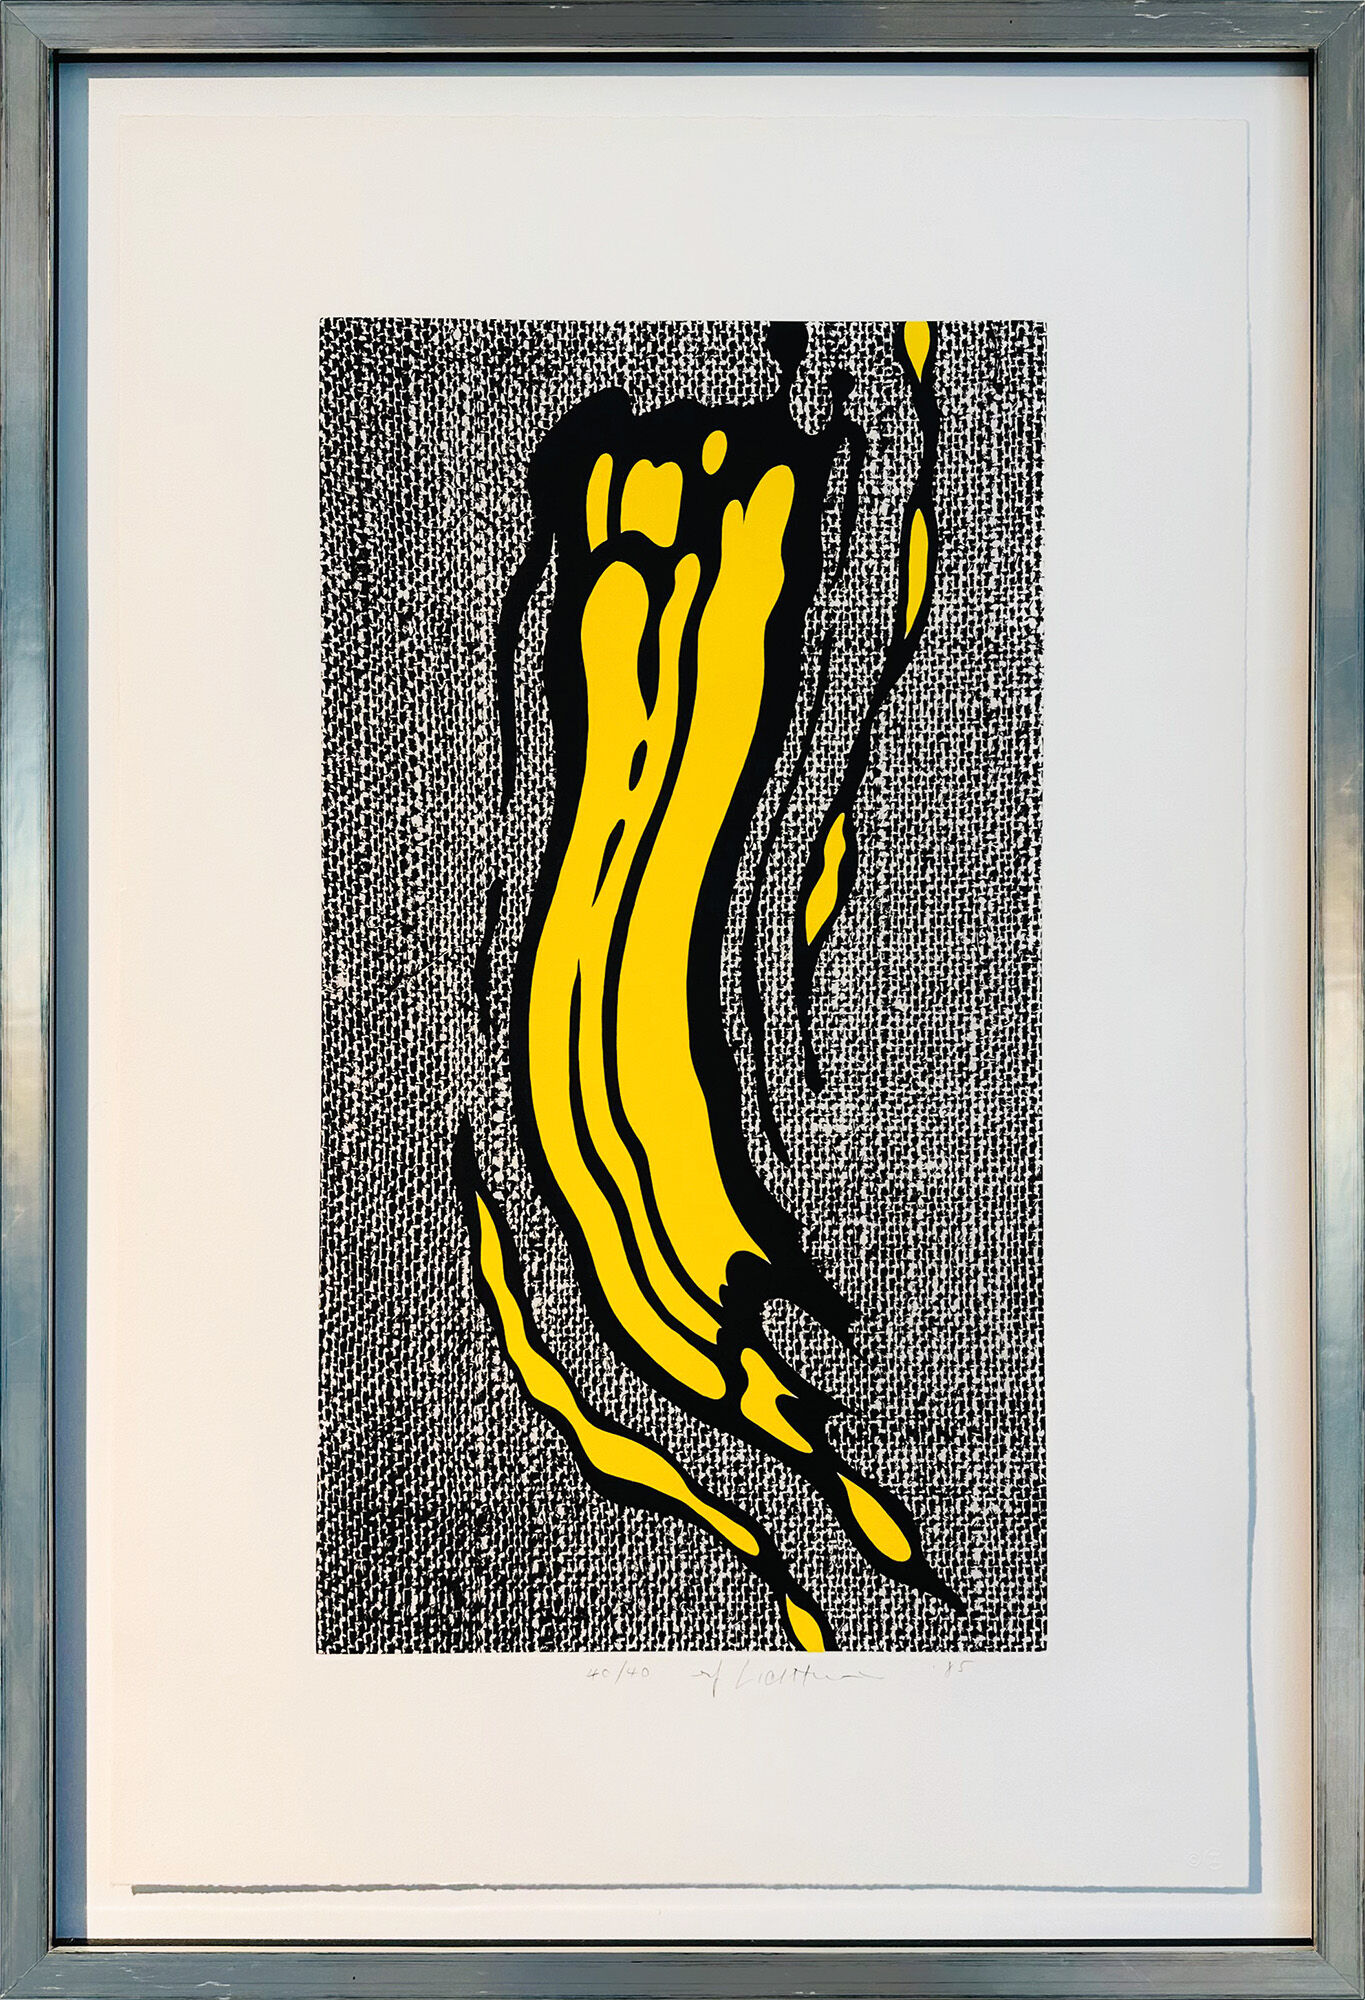 Bild "Yellow Brushstroke" (1985) von Roy Lichtenstein